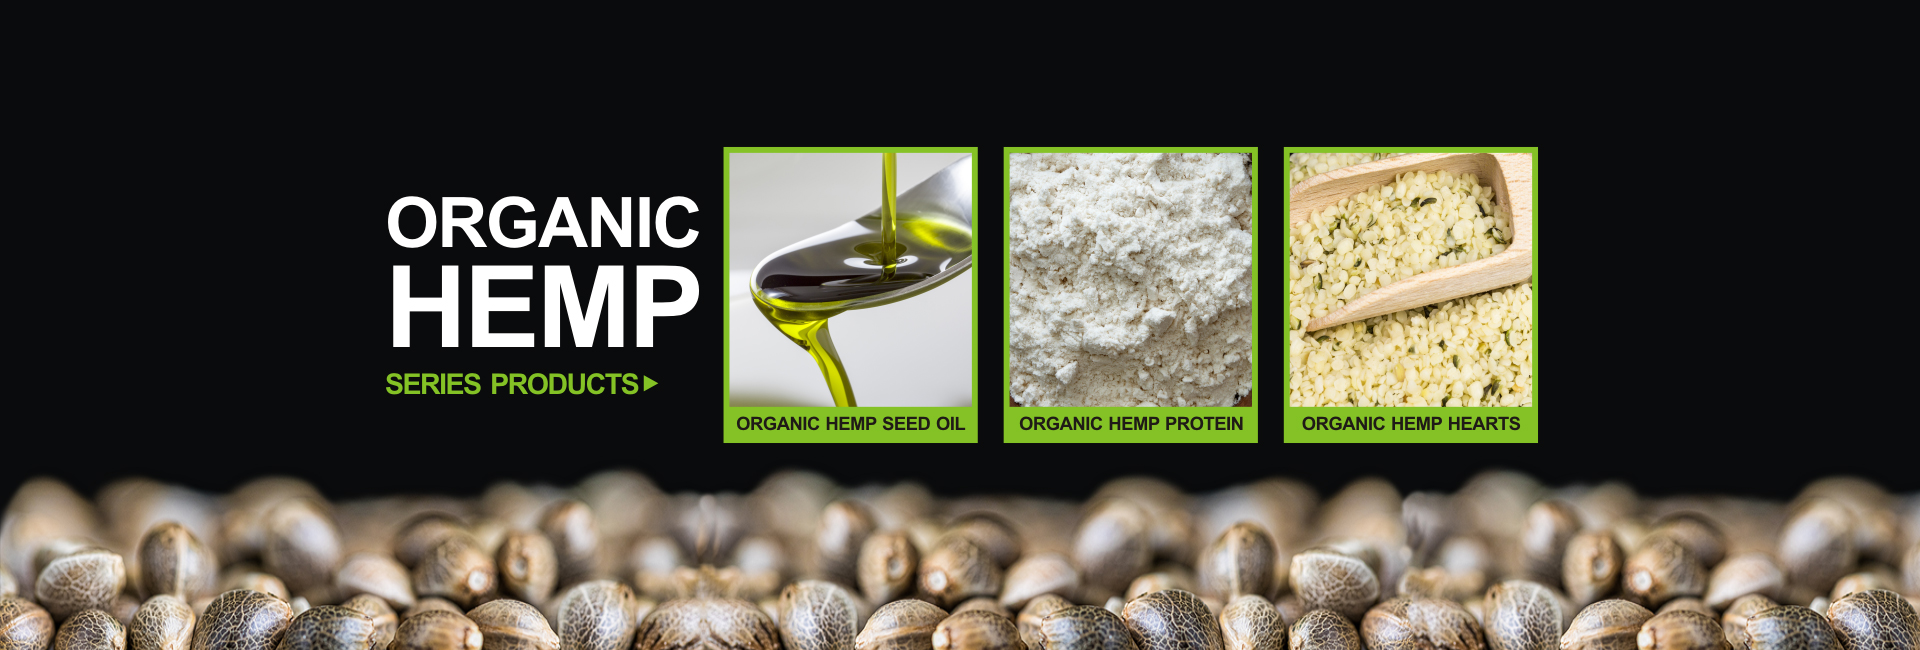 Organic Hemp Products